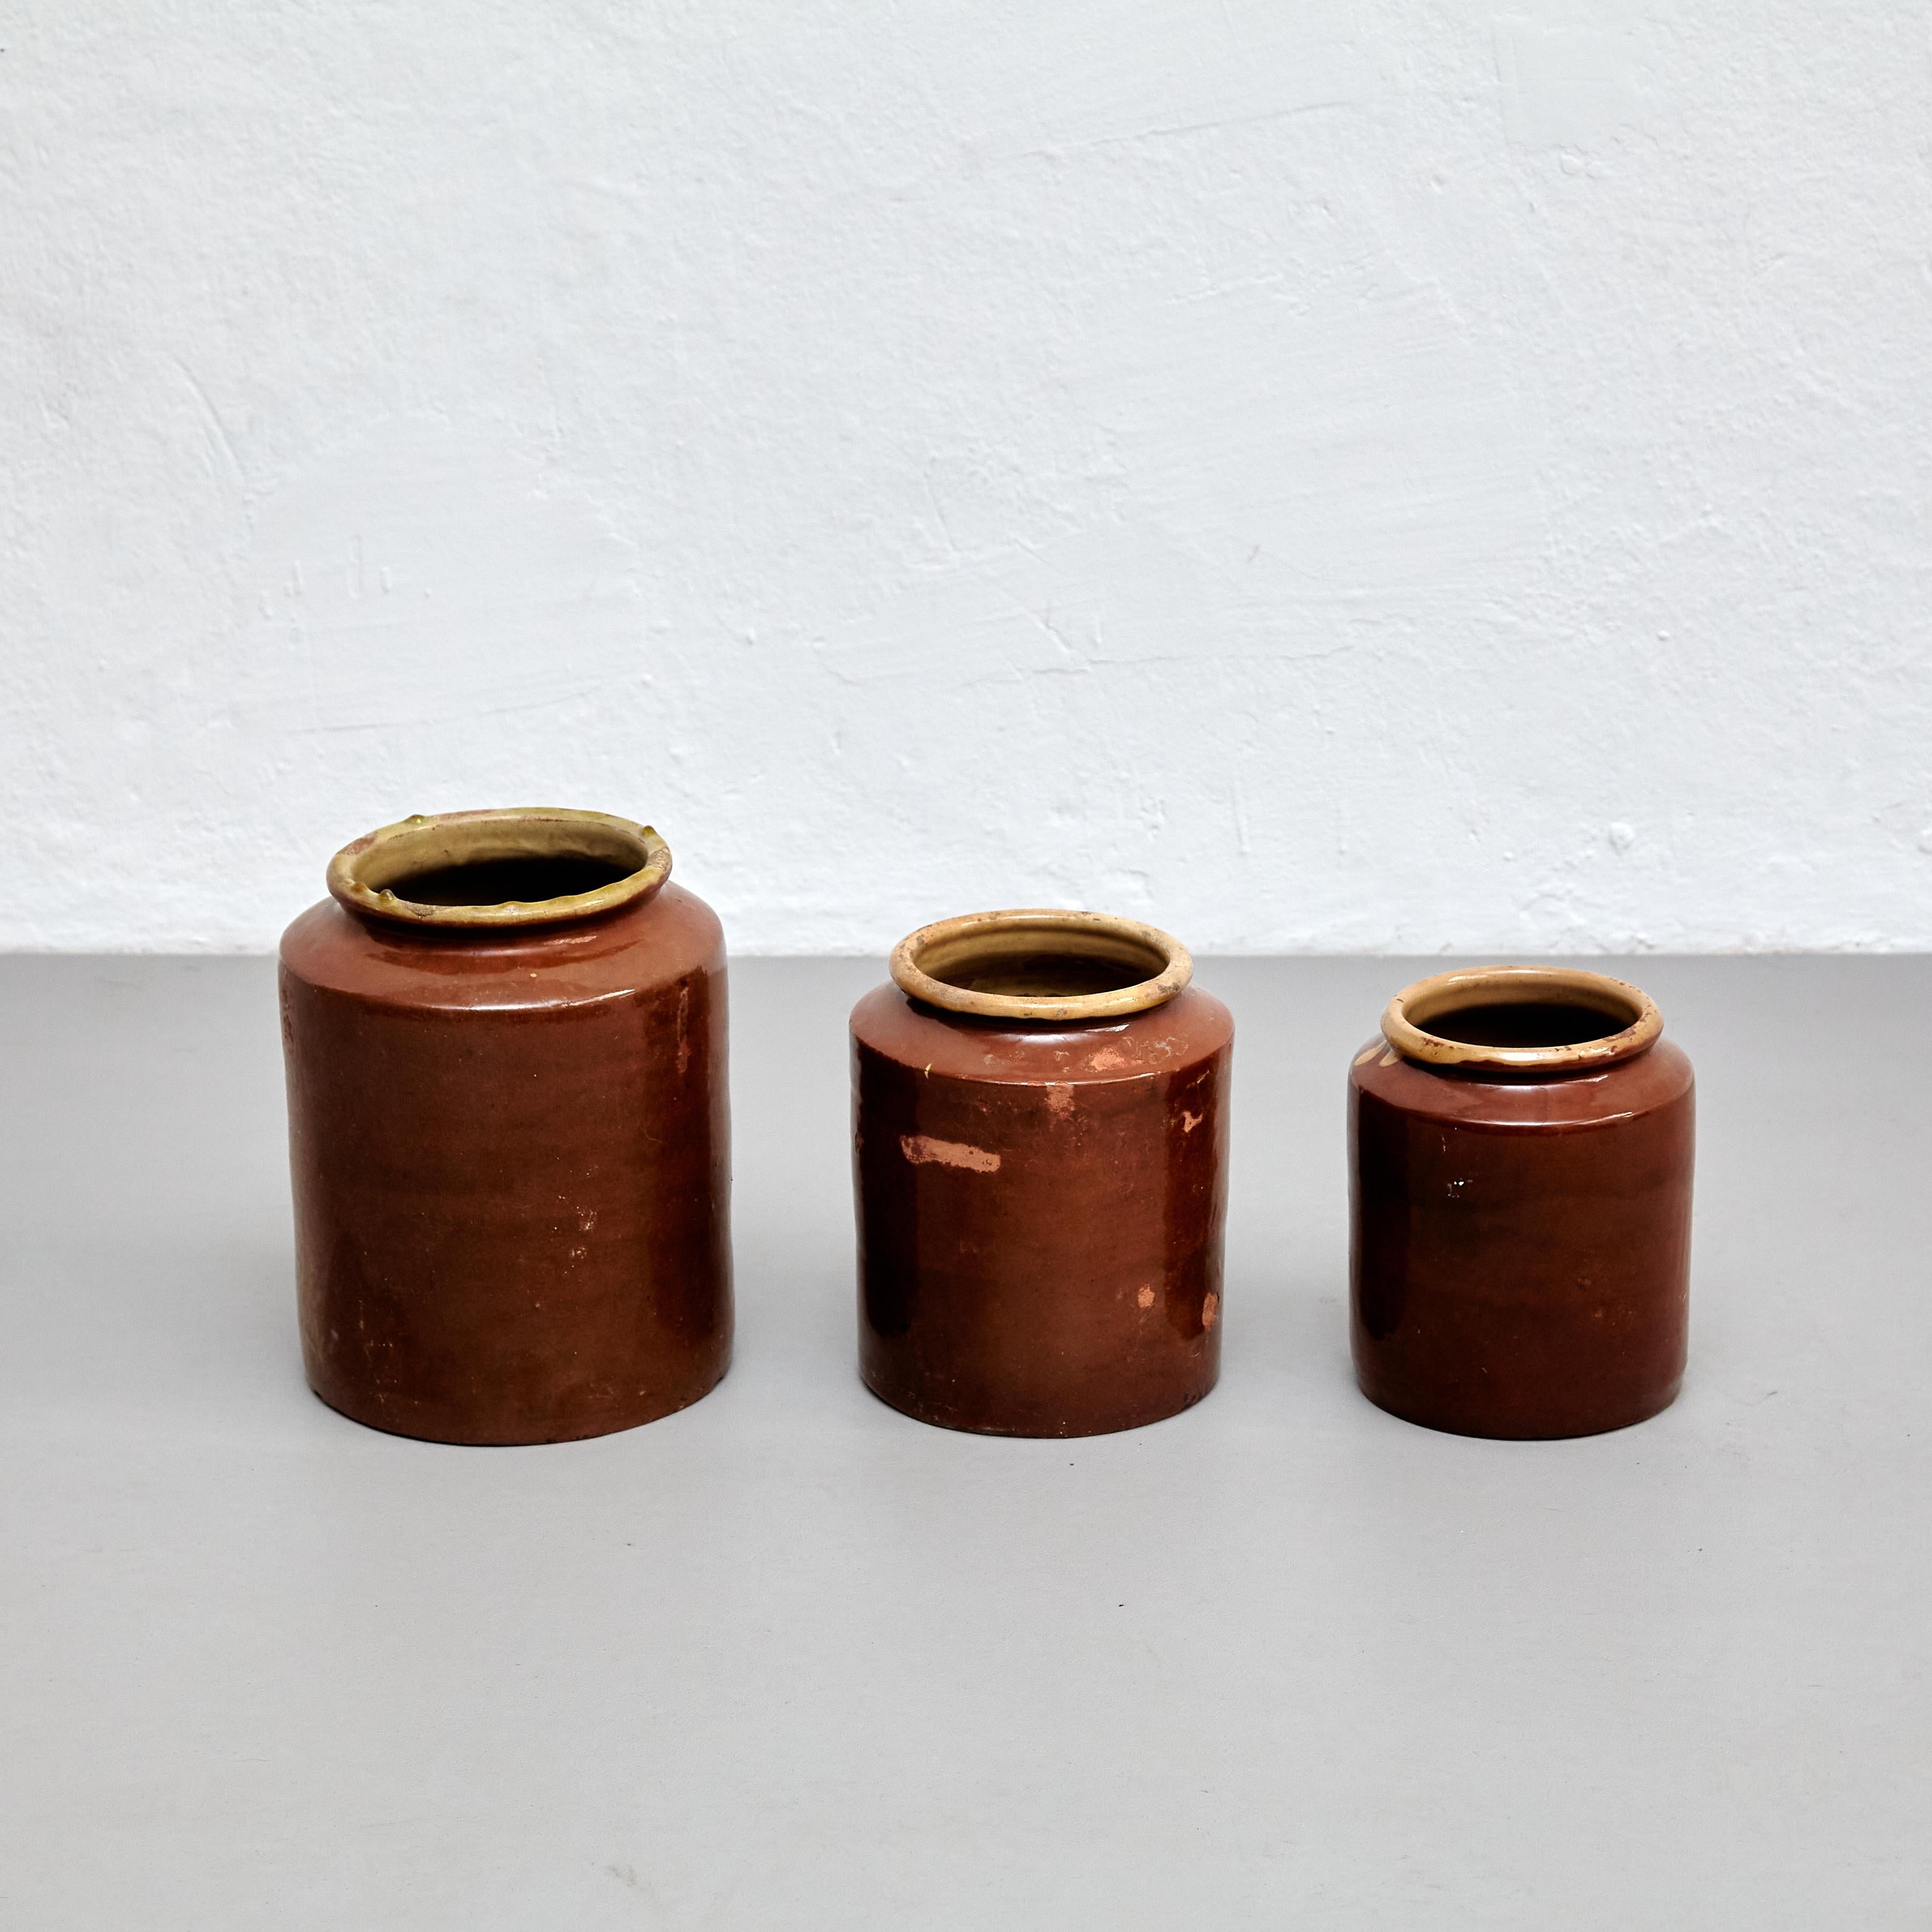 Dieser Satz von drei rustikalen Keramikvasen ist ein schönes Beispiel für die spanische Handwerkskunst des frühen 20. Jahrhunderts. Jedes Stück wurde sorgfältig von Hand gefertigt und weist eine einzigartige, organische Form auf, die die natürliche